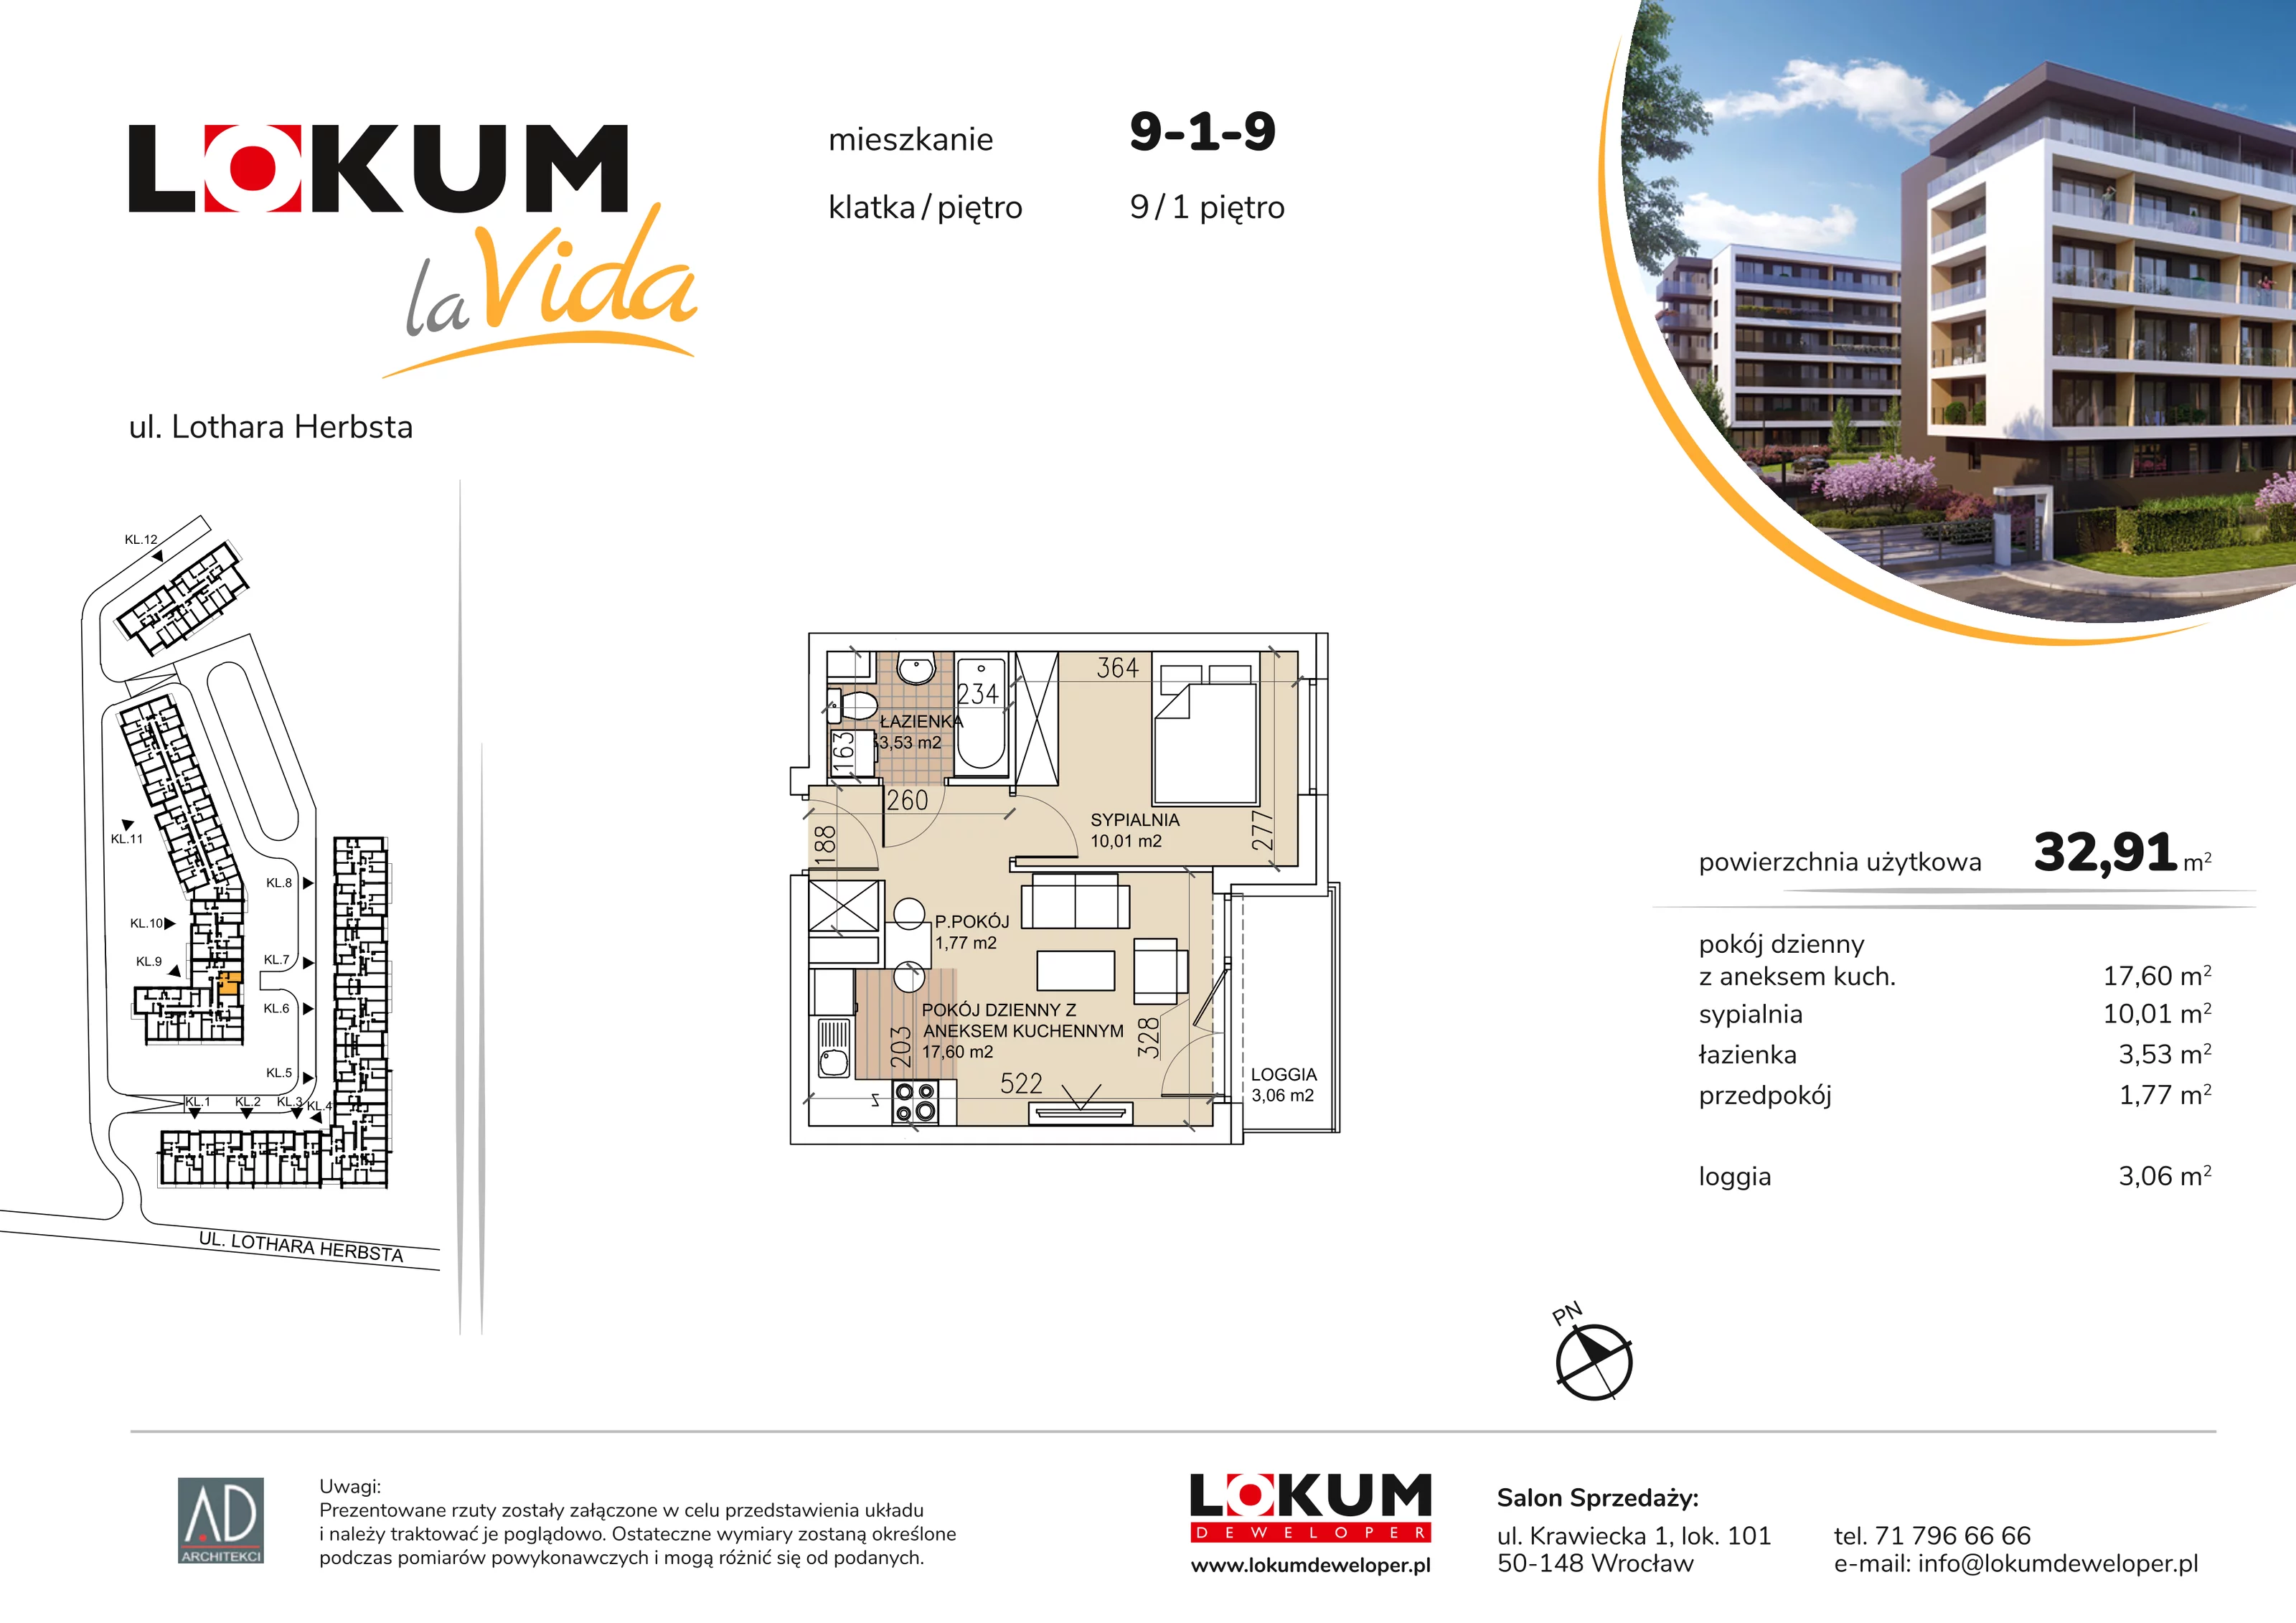 Mieszkanie 32,91 m², piętro 1, oferta nr 9-1-9, Lokum la Vida, Wrocław, Sołtysowice, ul. Lothara Herbsta